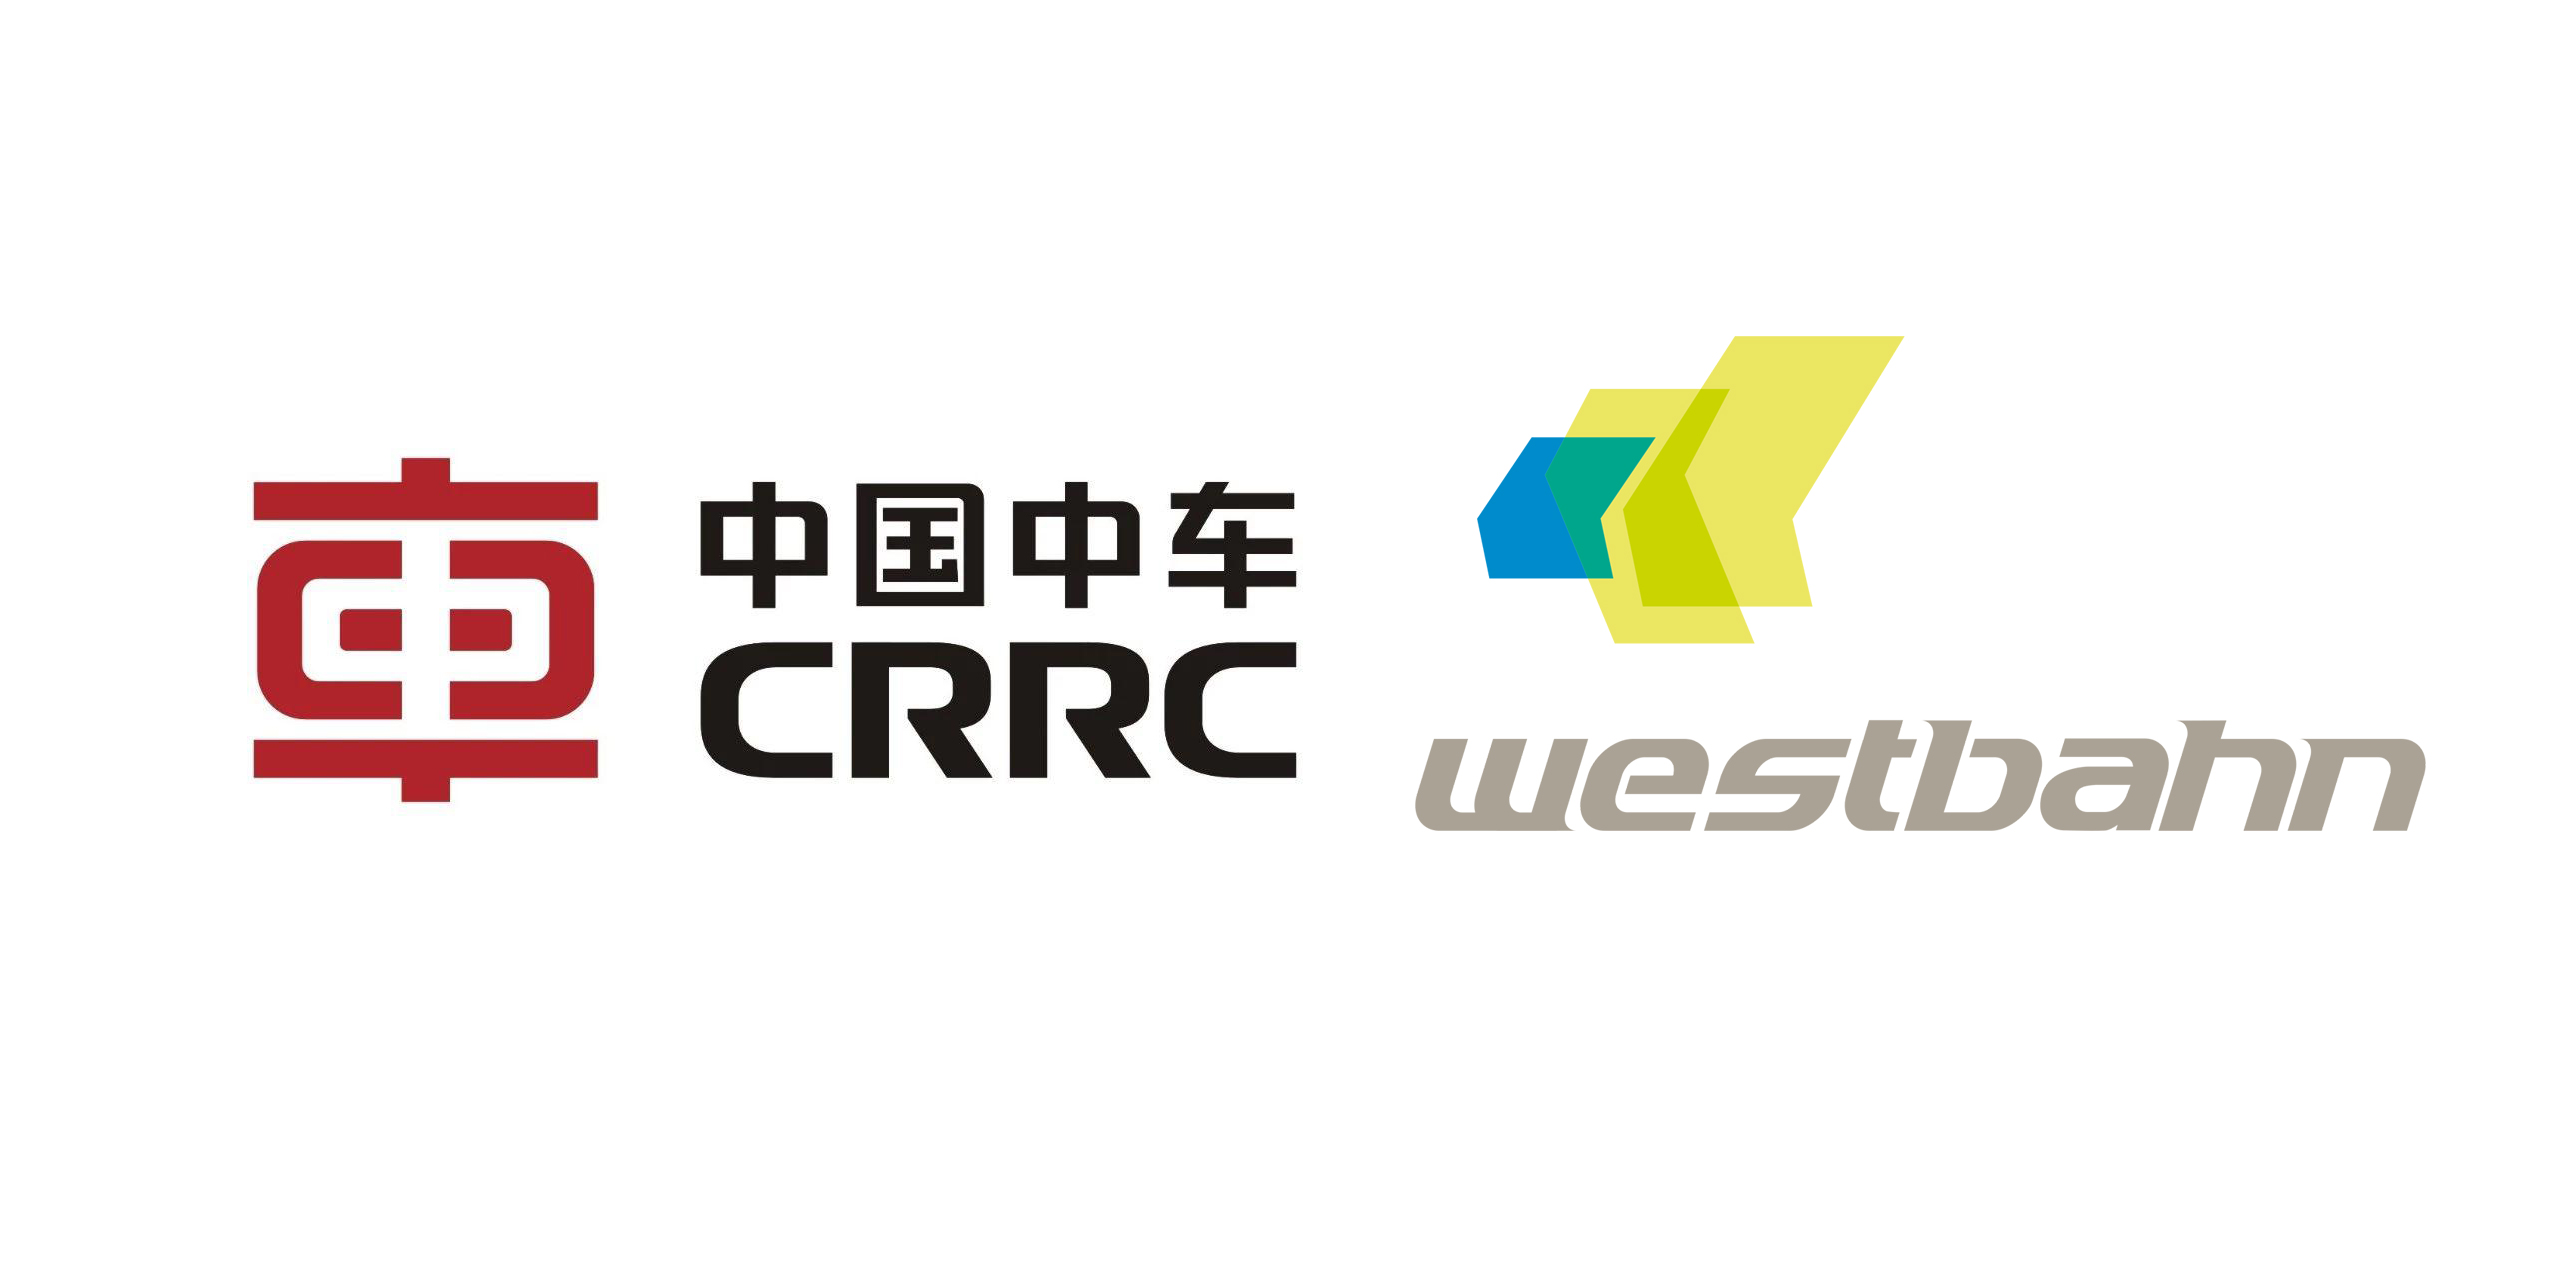 2019年12月19日,中国中车(crcc)同westbahn(奥地利西部铁路有限